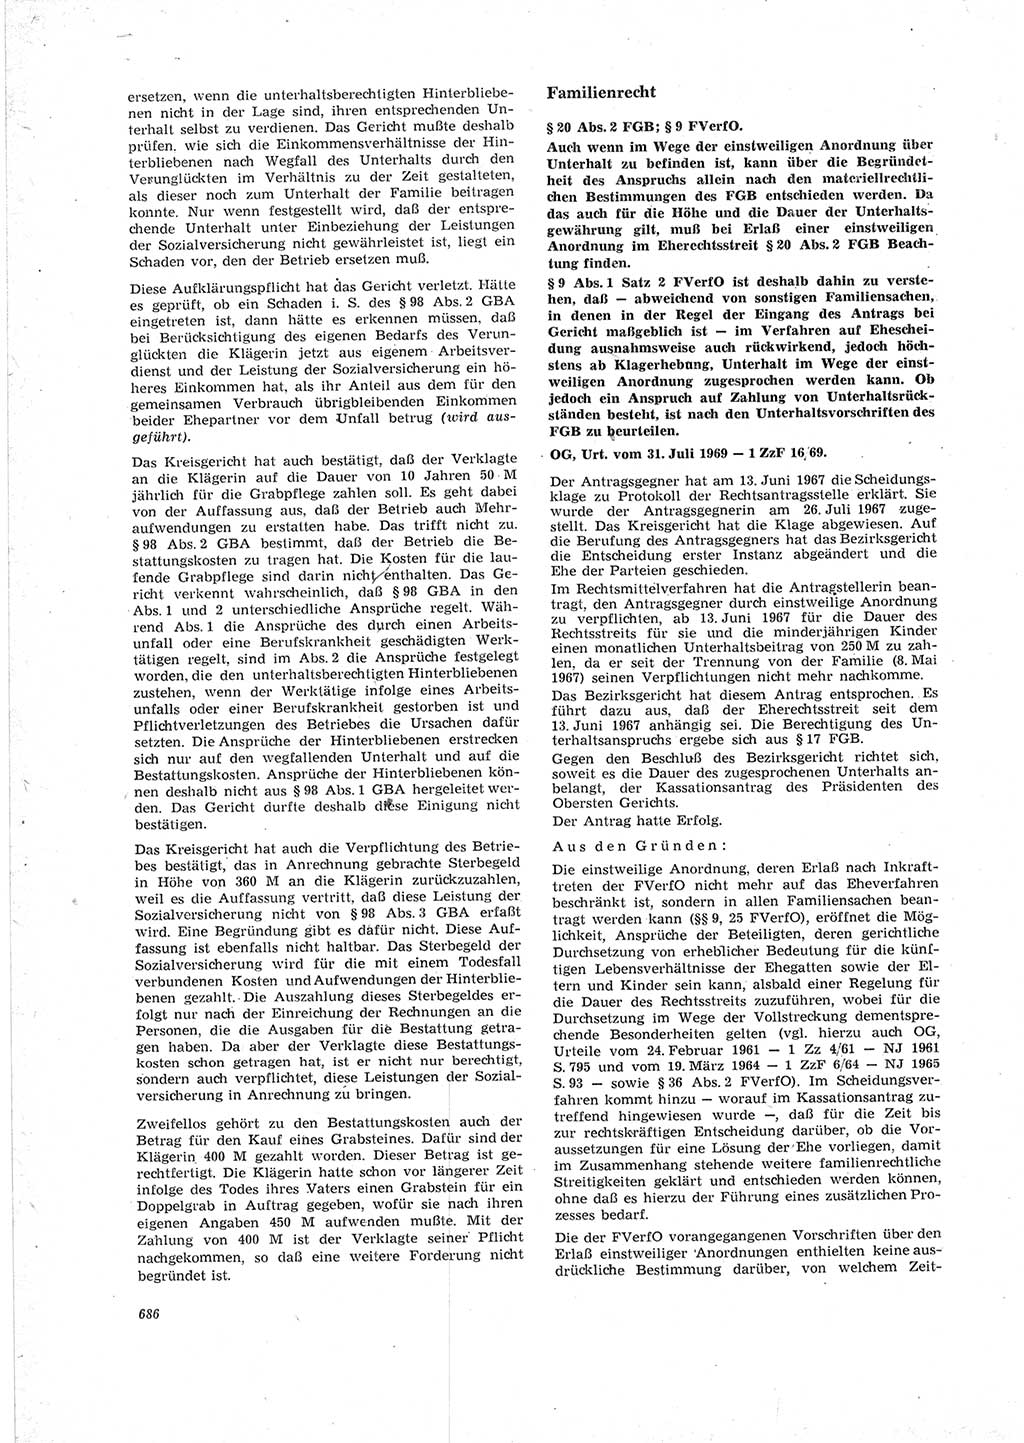 Neue Justiz (NJ), Zeitschrift für Recht und Rechtswissenschaft [Deutsche Demokratische Republik (DDR)], 23. Jahrgang 1969, Seite 686 (NJ DDR 1969, S. 686)